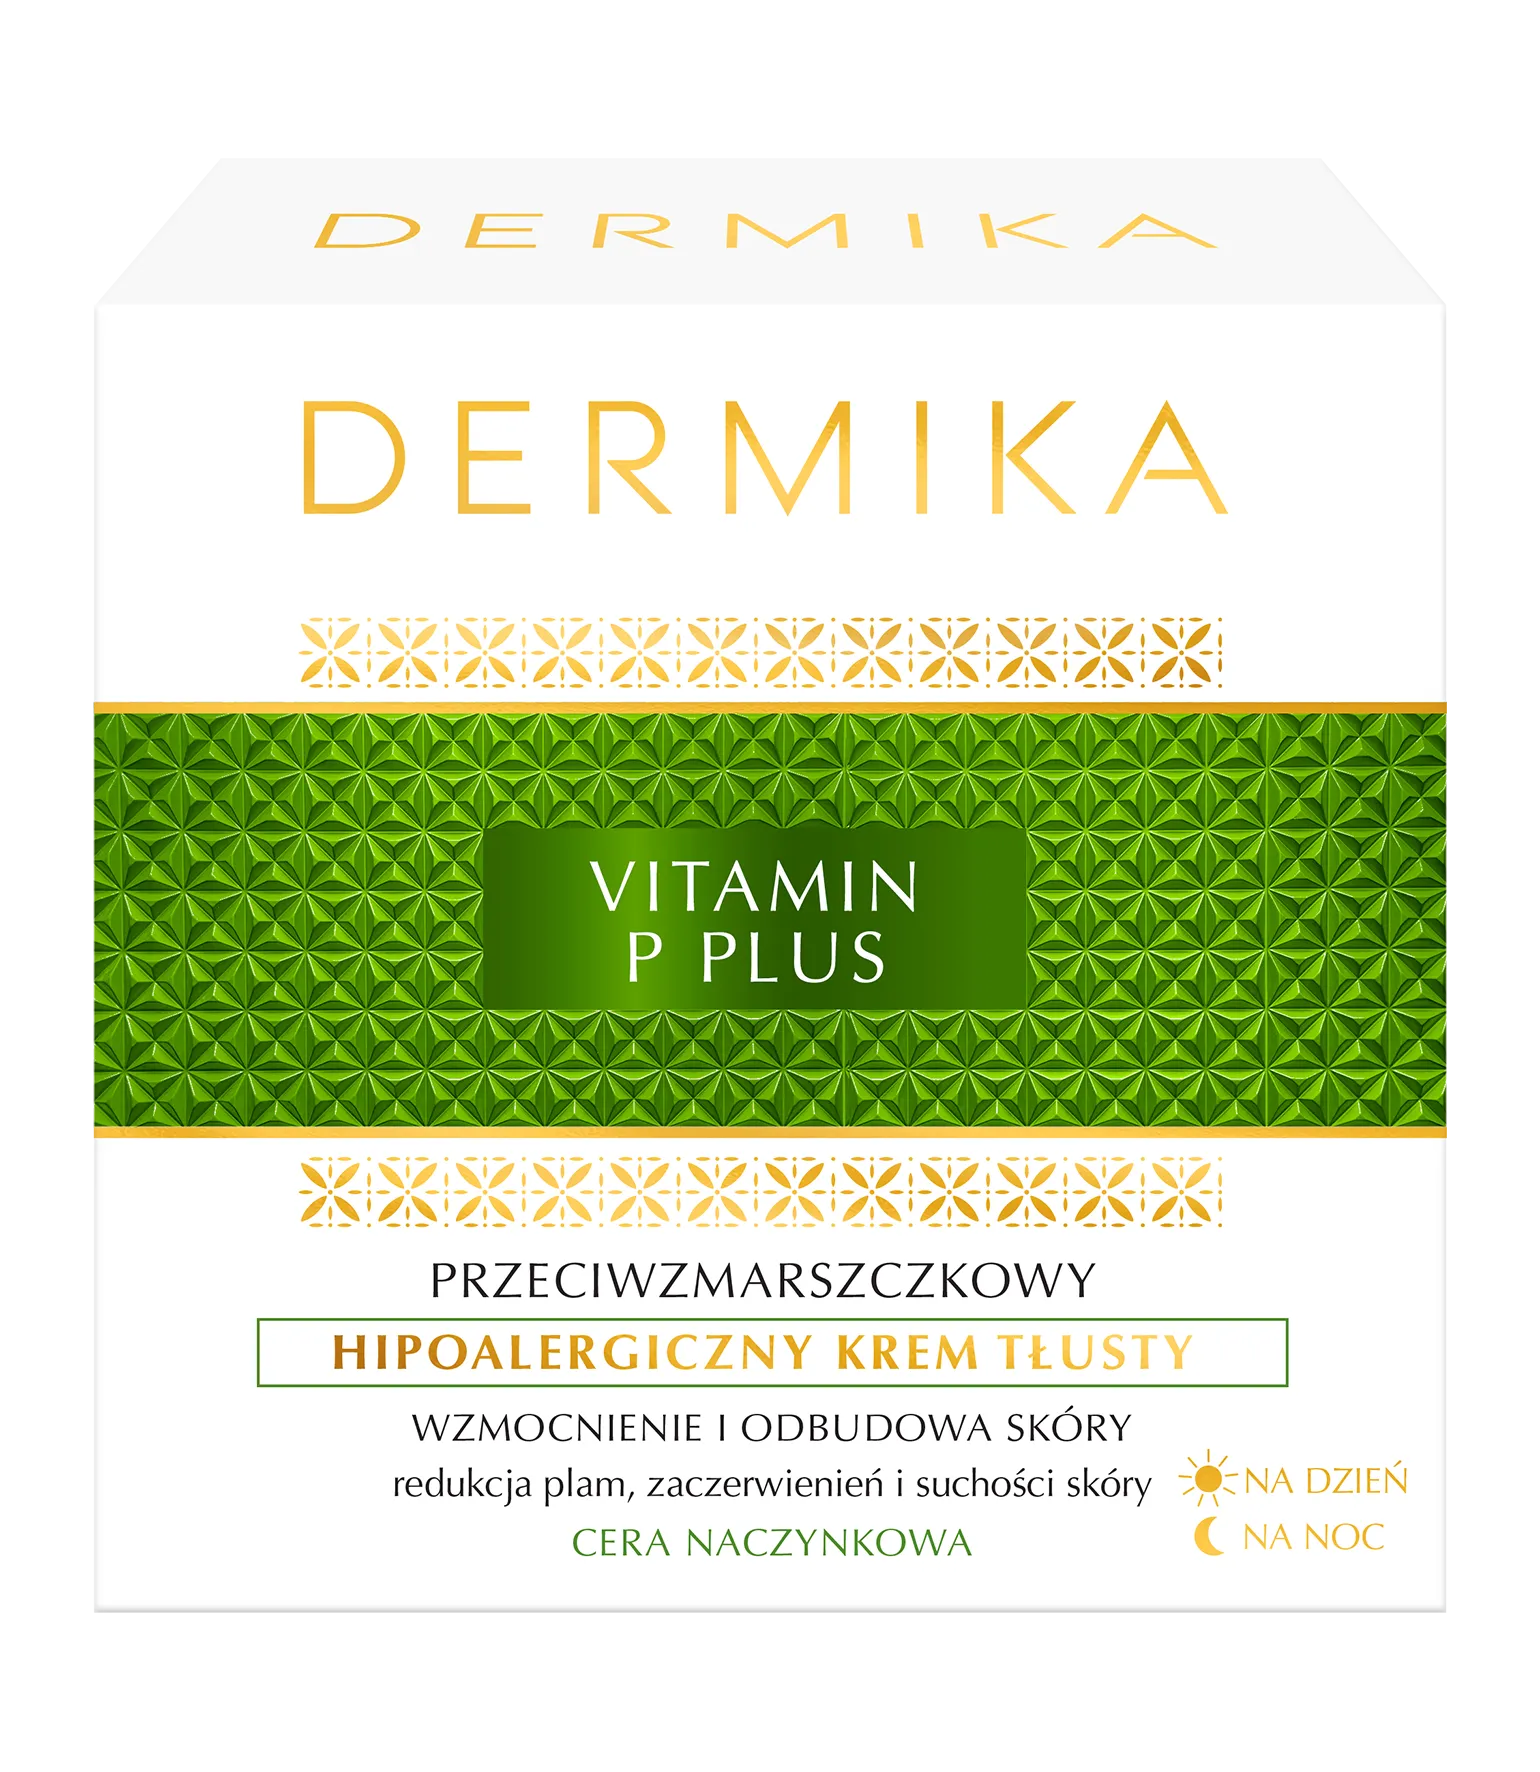 Dermika Vitamin P Plus hipoalergiczny krem tłusty do twarzy, 50 ml 